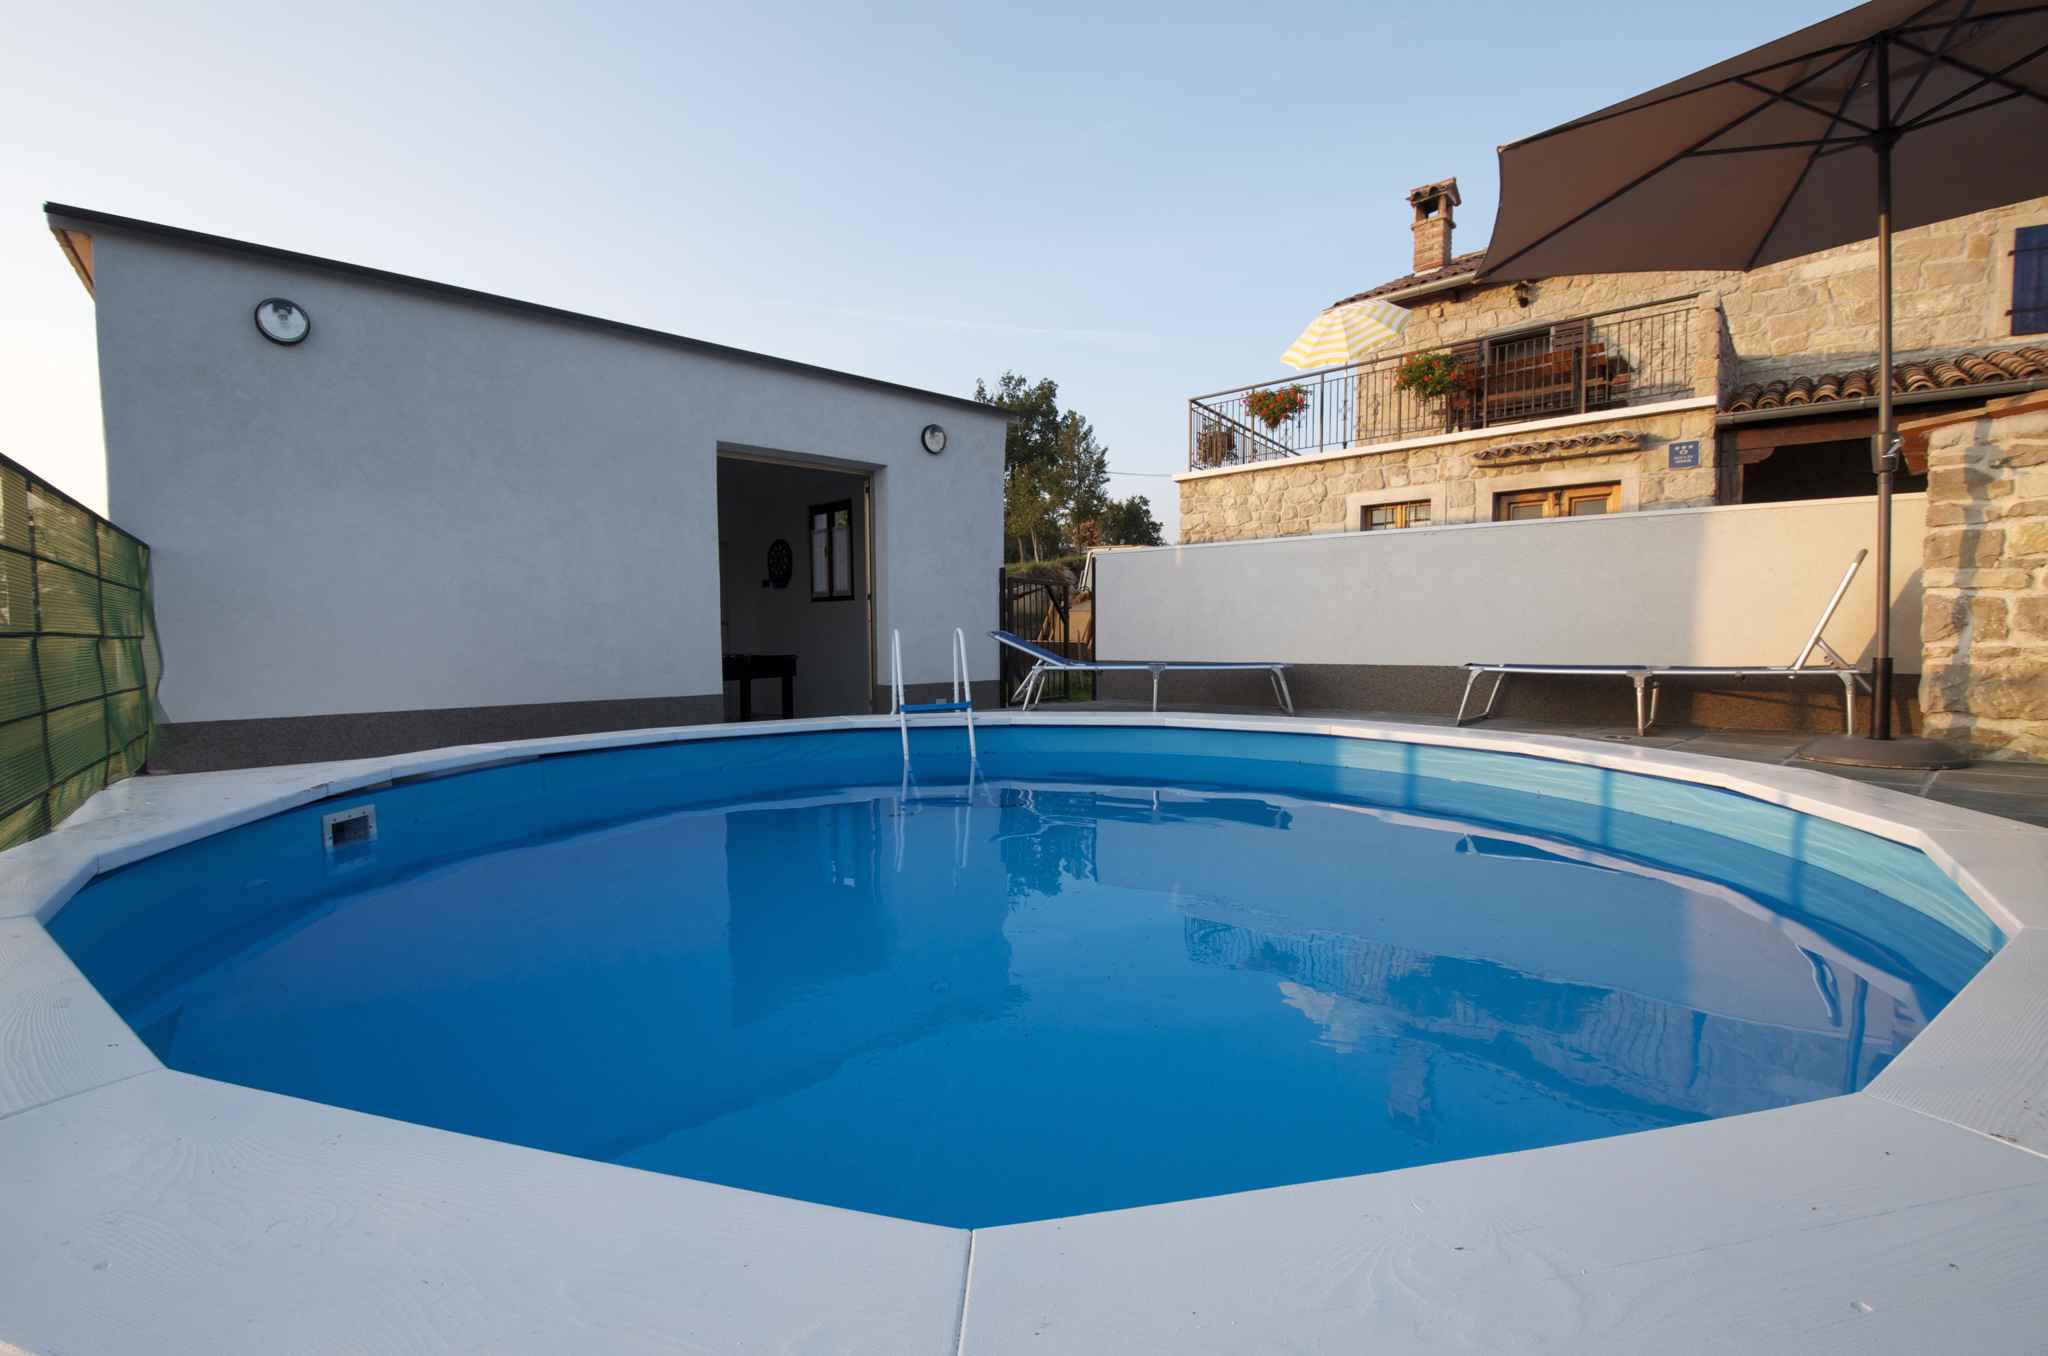 Ferienhaus in ruhiger Lage mit Pool  in Istrien